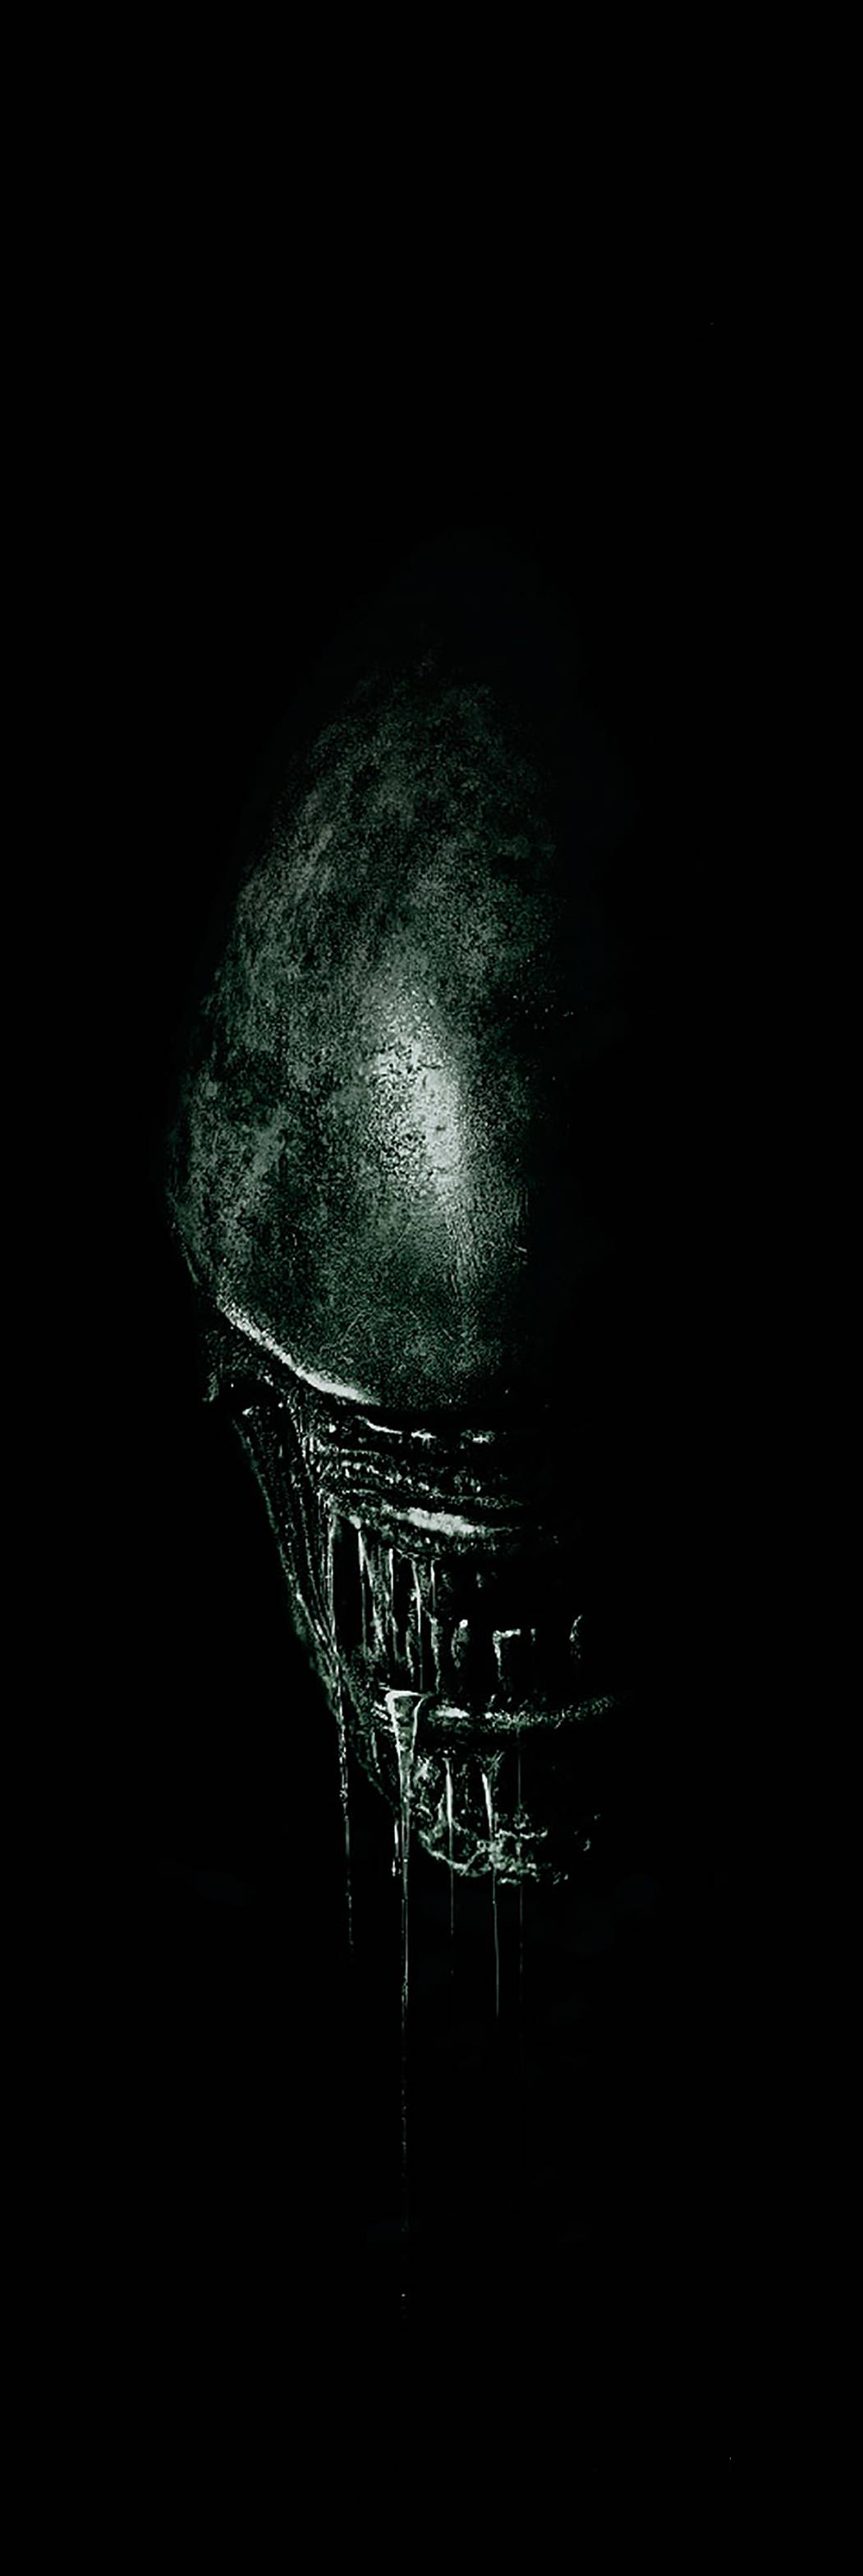 Così Ridley Scott ha divorato la fantascienza per partorire un "Alien"